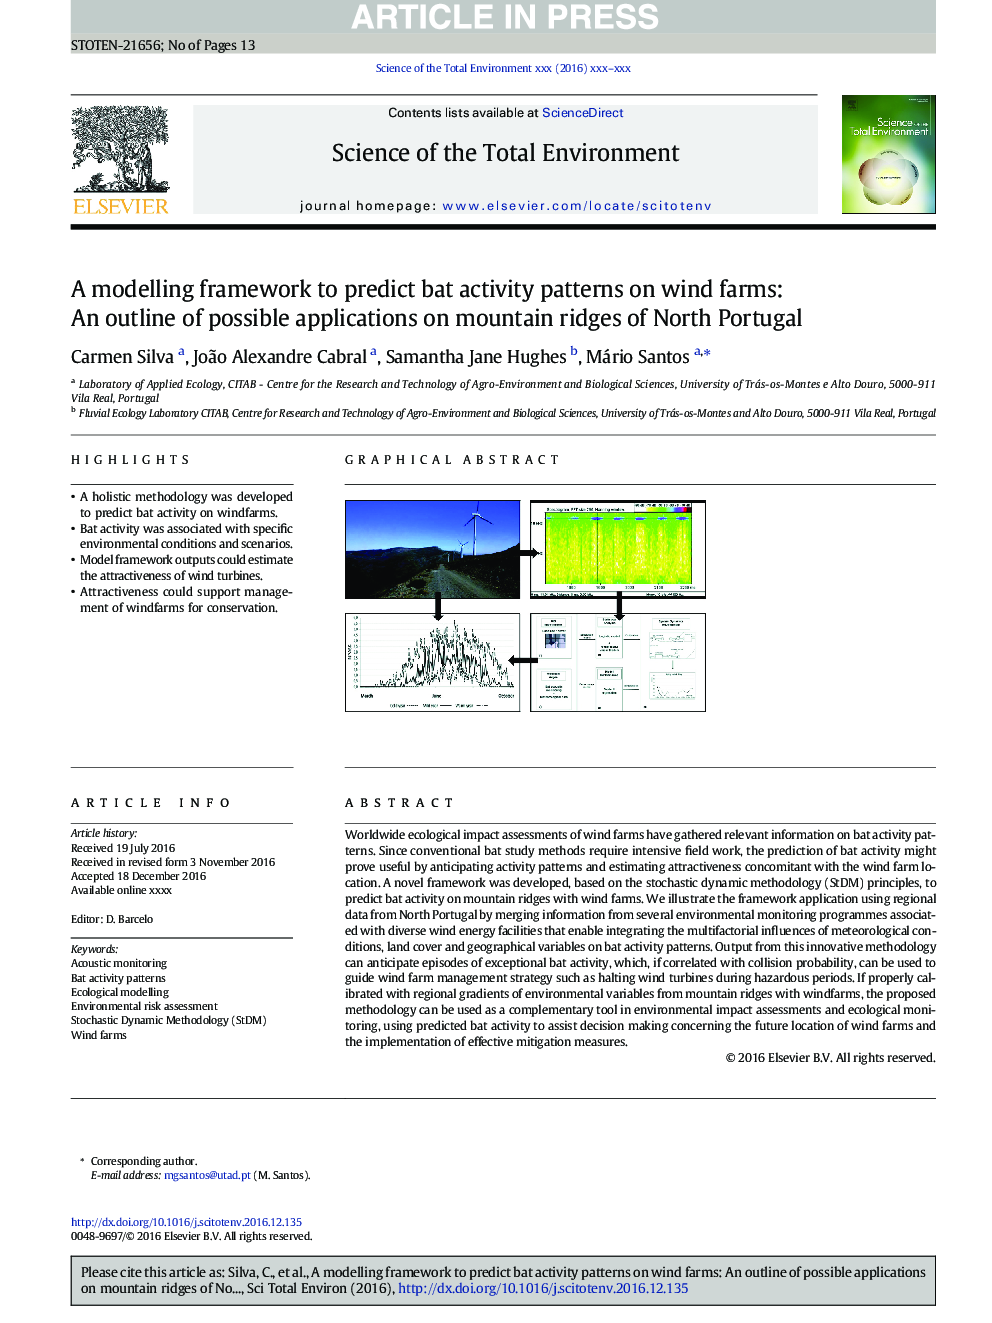 چارچوب مدل سازی برای پیش بینی الگوهای فعالیت خفاش در مزارع باد: یک طرح کلی از برنامه های کاربردی در کوه های کوهستان شمالی پرتغال 